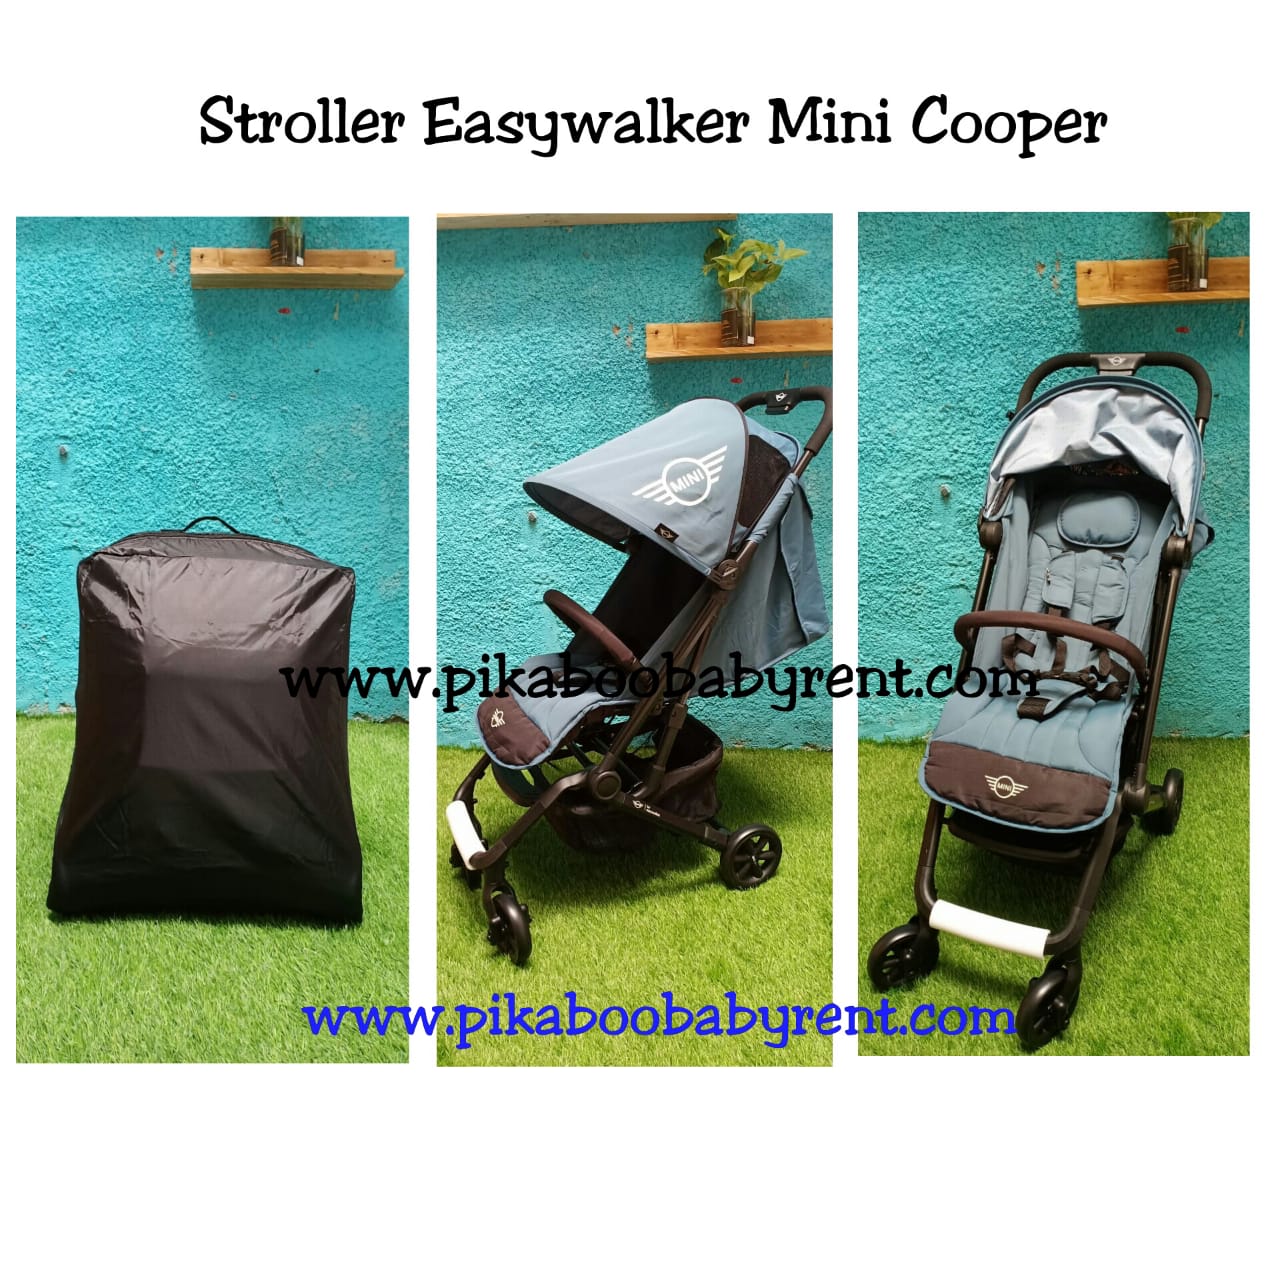 MINI COOPER EASY WALKER STROLLER ICE BLUE